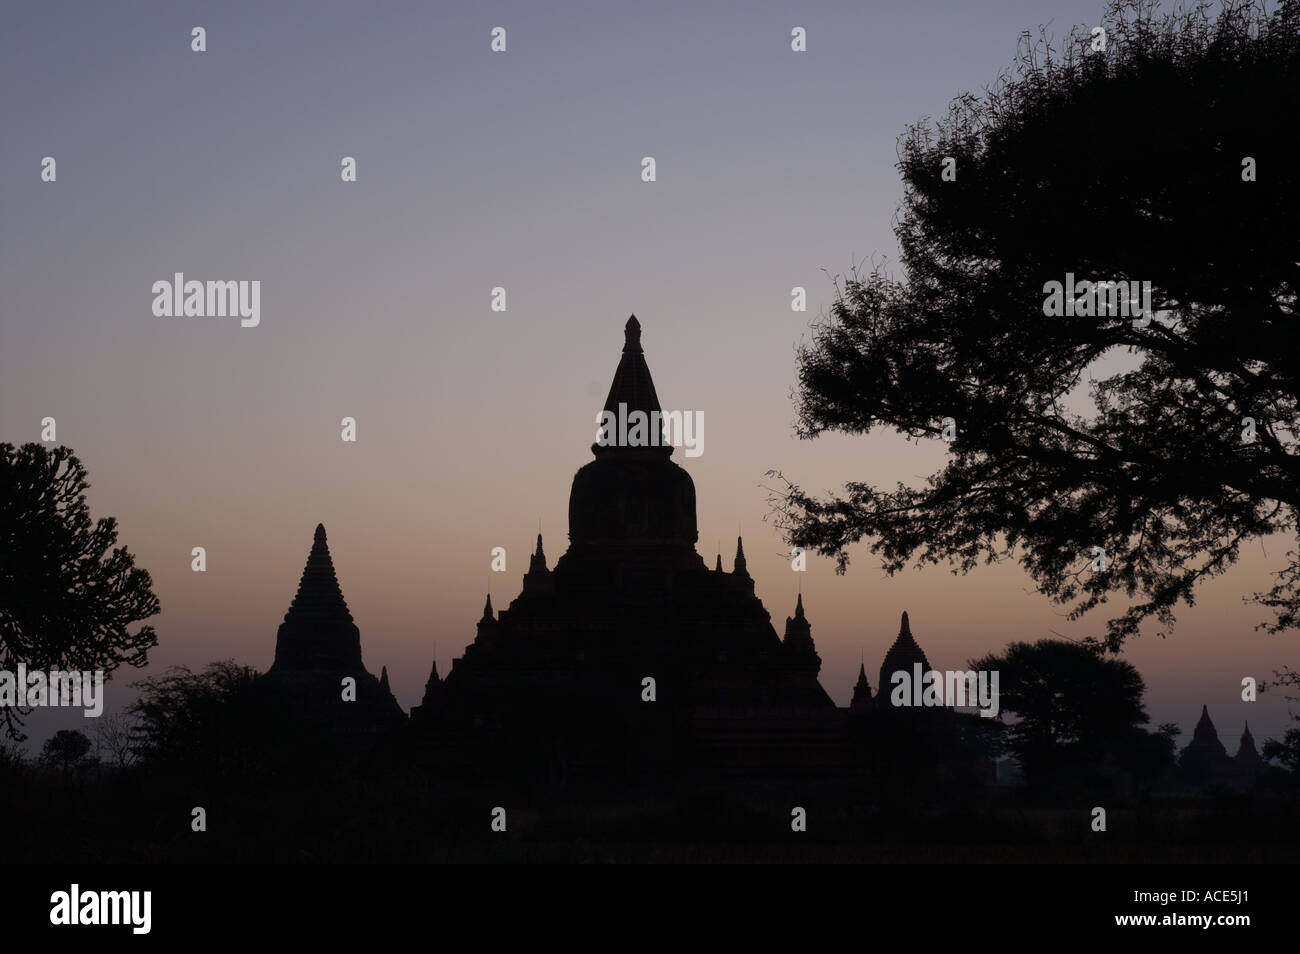 Myanmar-Burma-Bagan archäologische zone mehr als 4000 Tempel in einer Biegung des Ayeyarwady Fluss Tempels und Baum Silhouette an Stockfoto